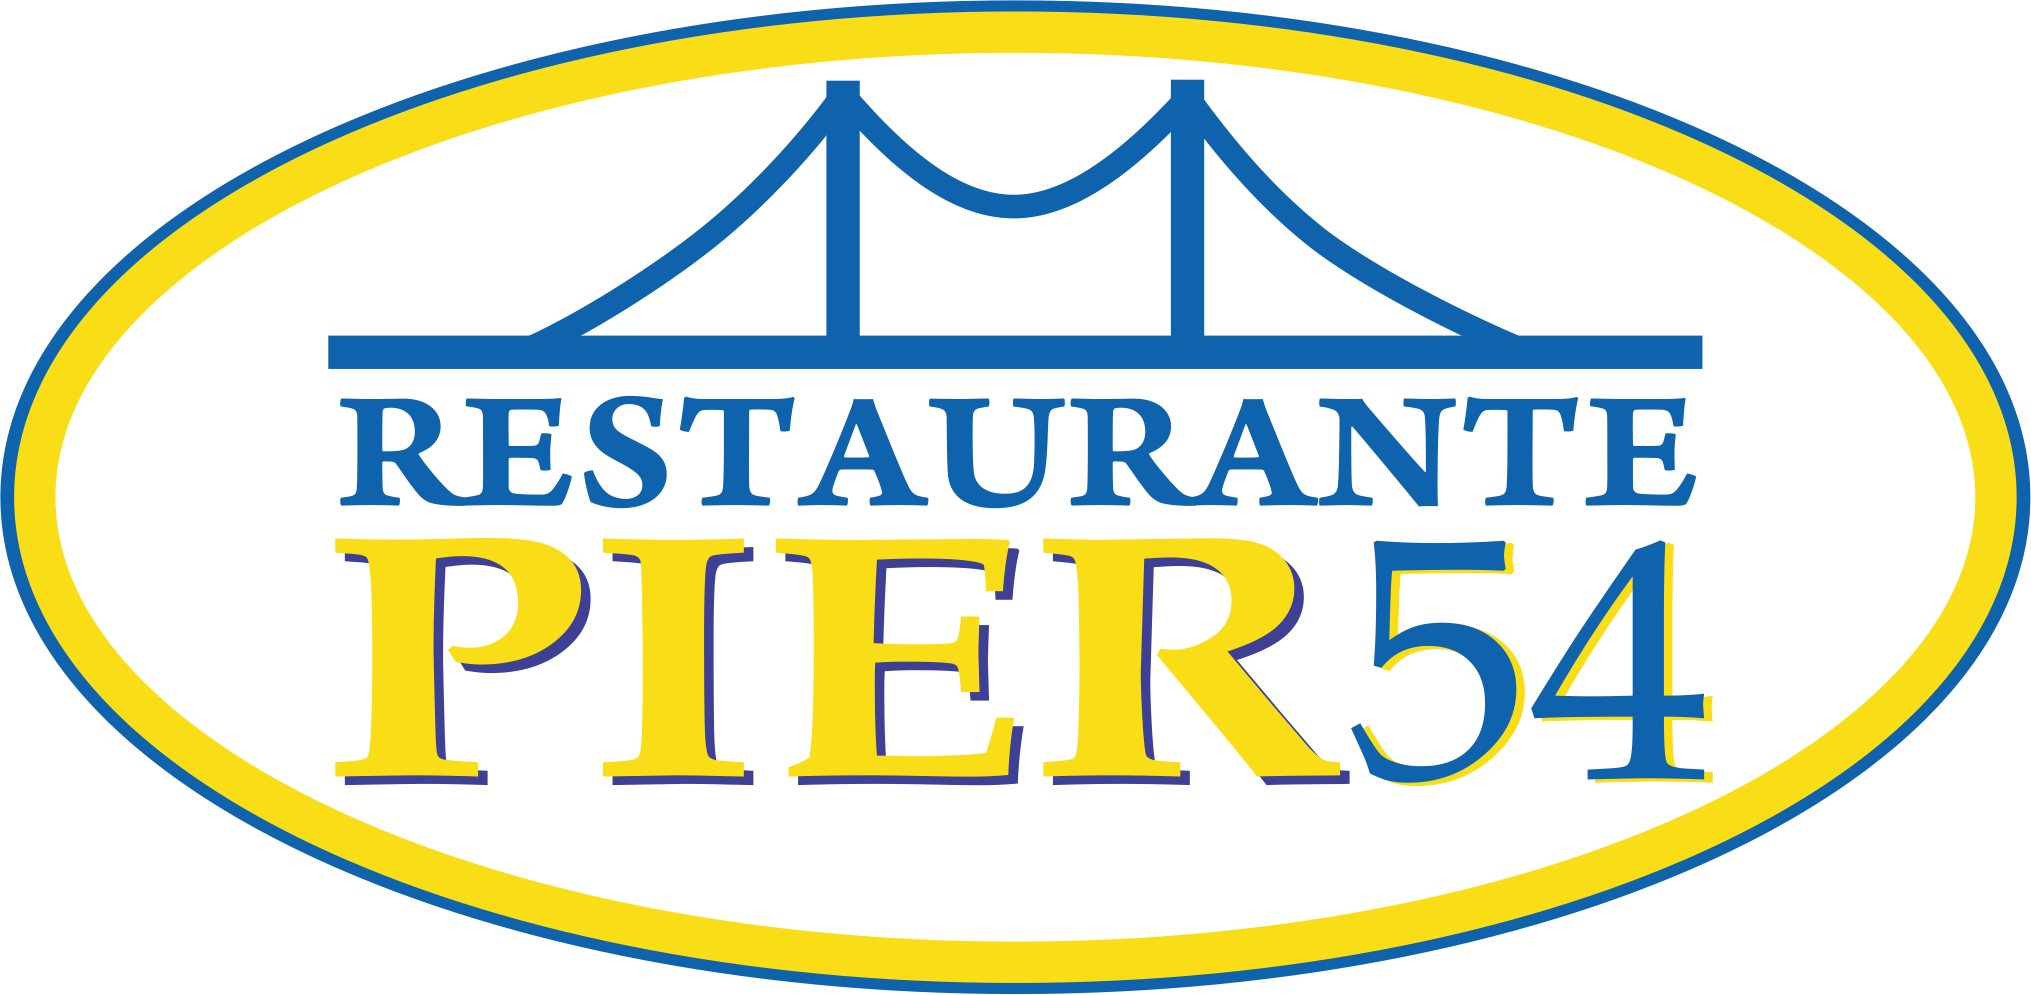 Pier 54 Restaurante